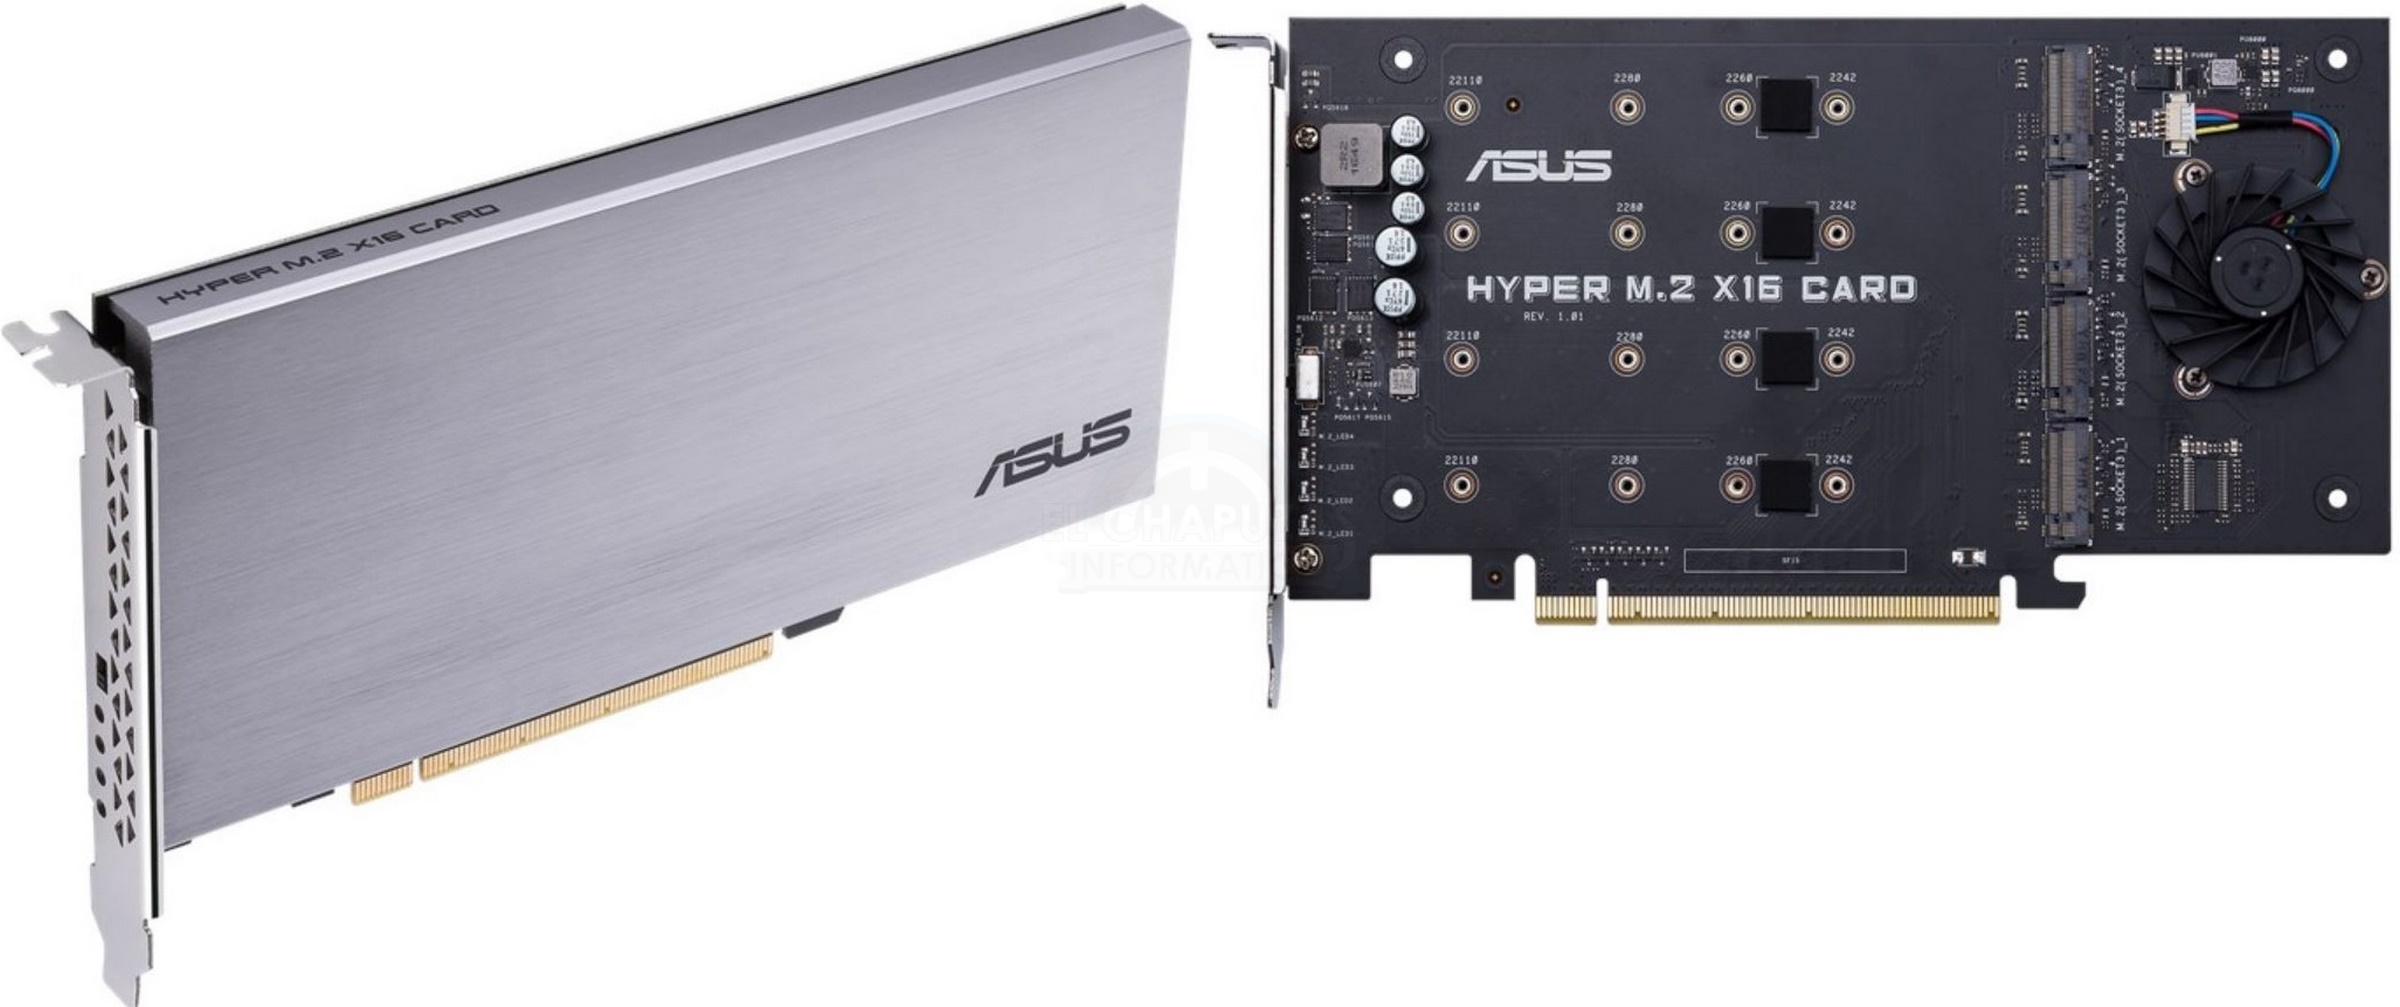 A Asus lança sua placa Hyper M.2 x16, até 4x M.2 SSDs em um slot PCIe 3.0 x16